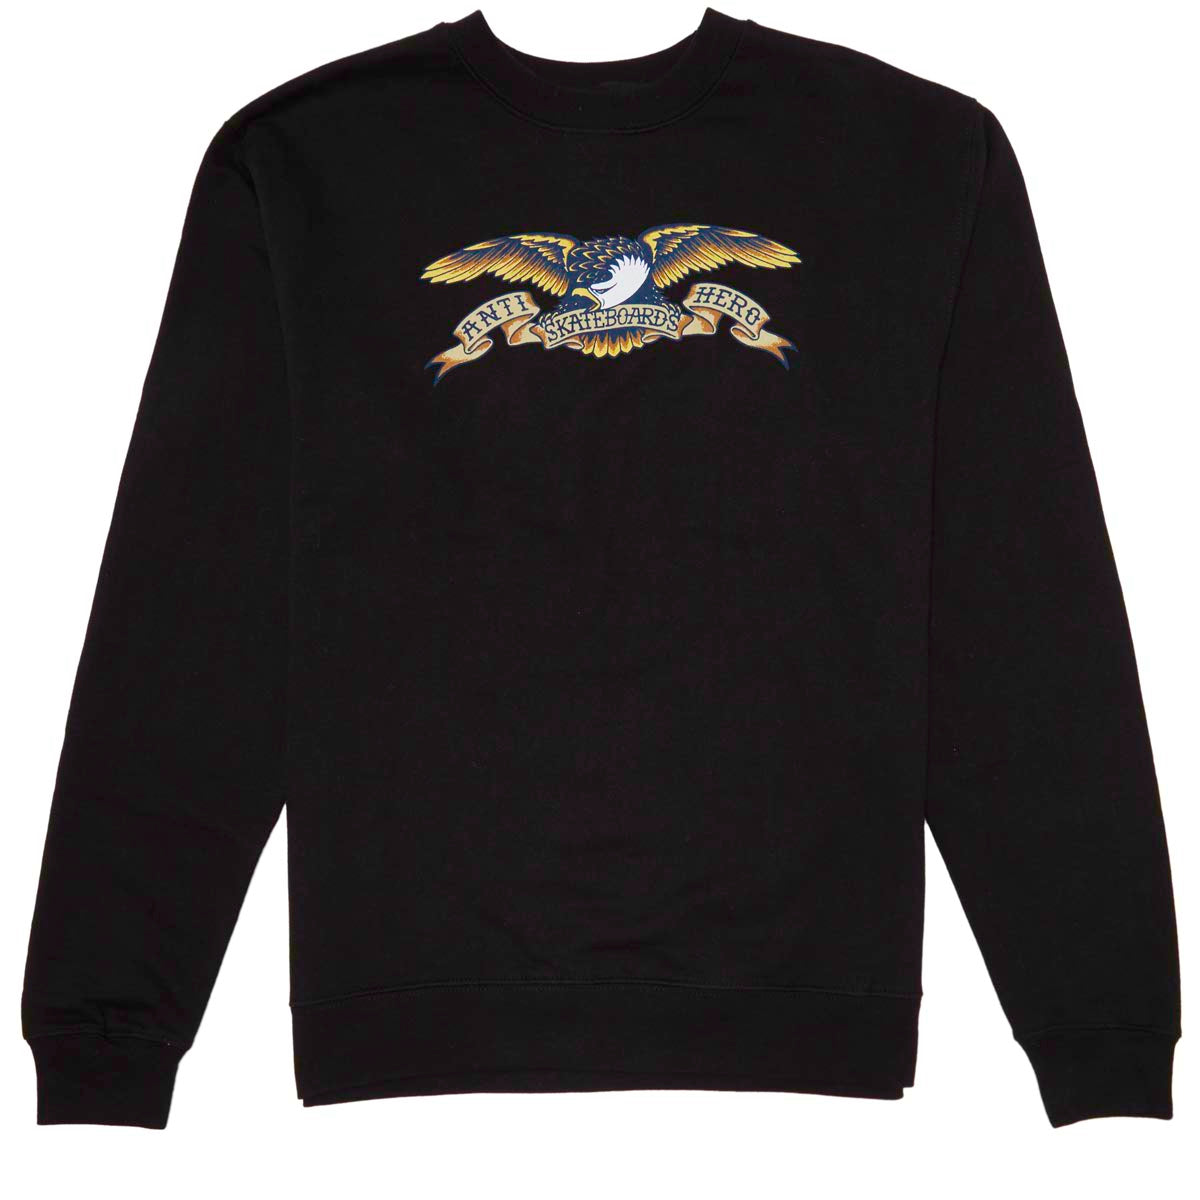 Anti-Hero Eagle Sweatshirt - Black/Blue Multi image 1